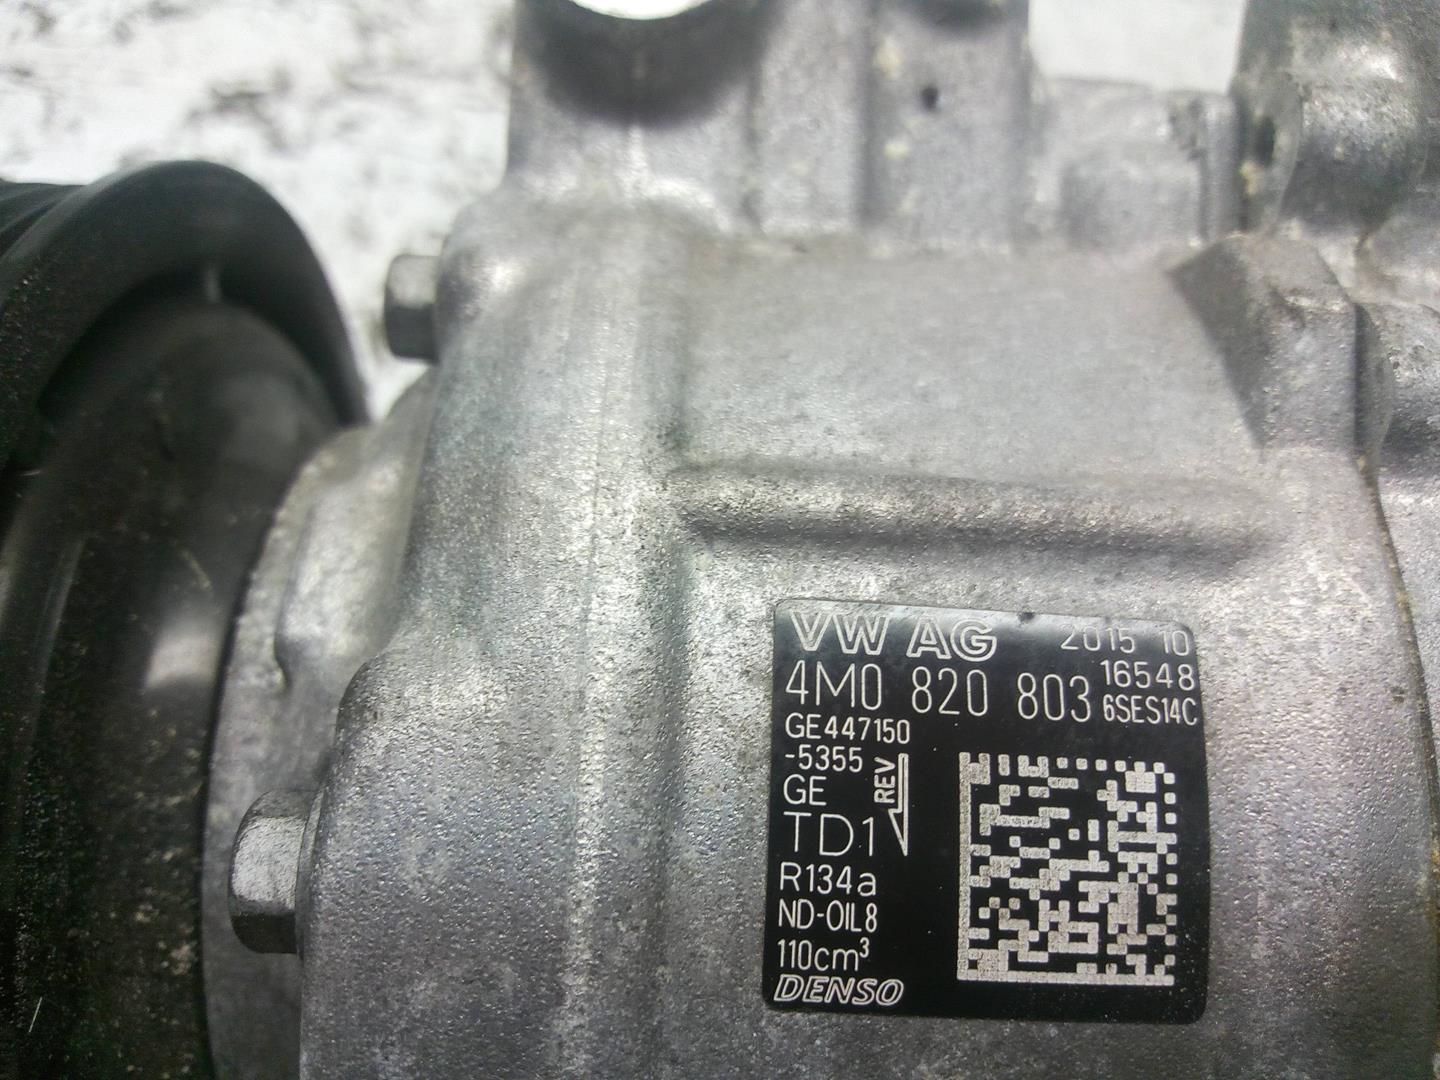 AUDI A4 B9/8W (2015-2024) Air Condition Pump 4M0820803, GE447150 18531364